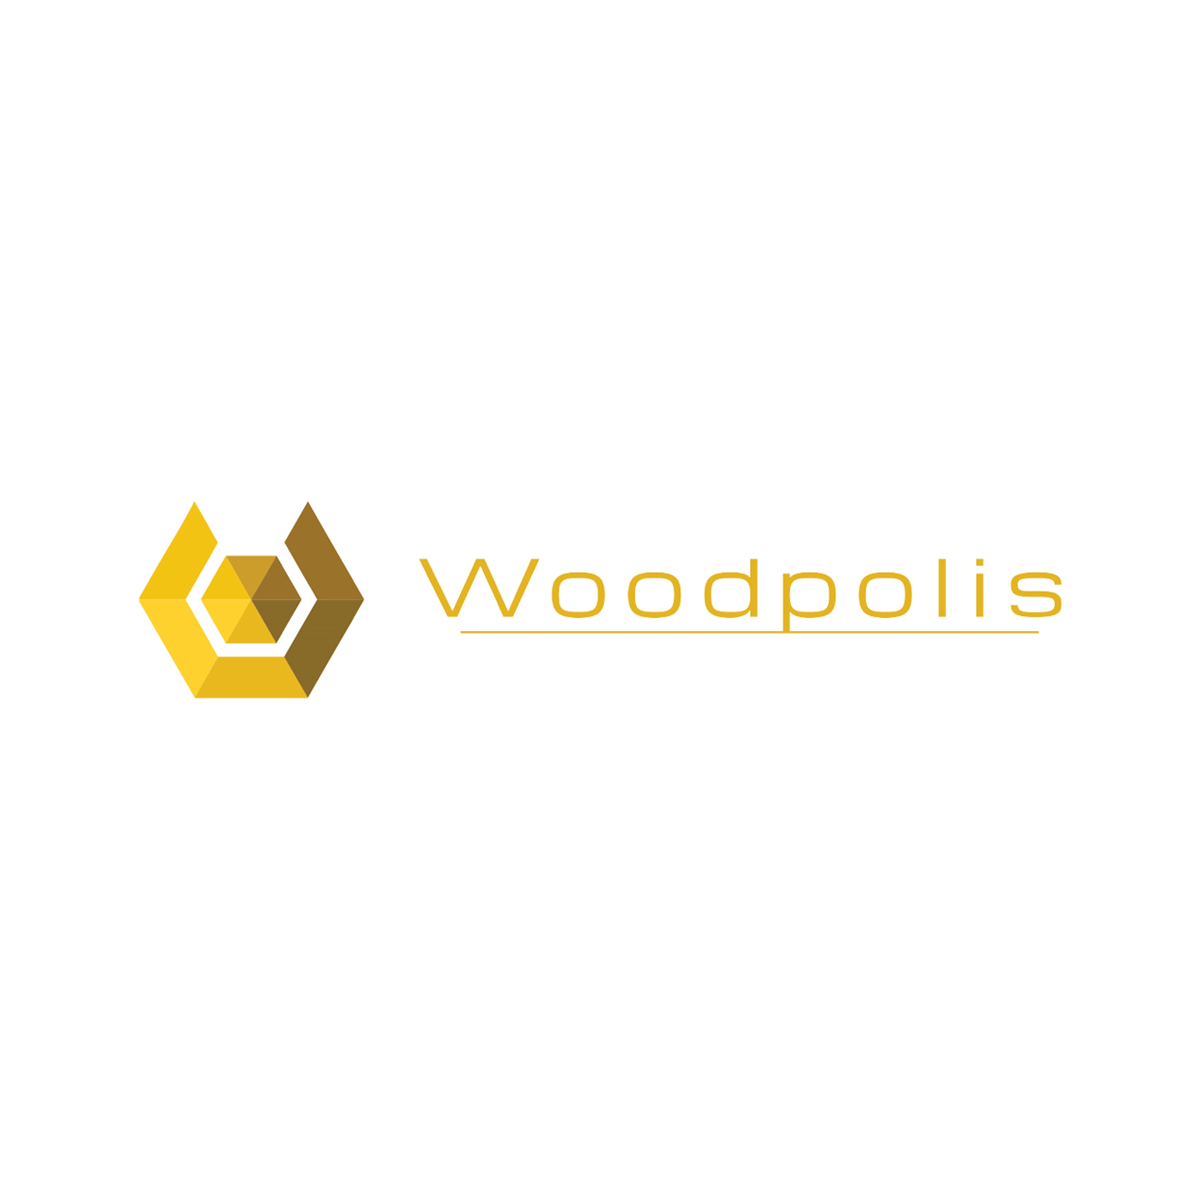 woodpolis1.png